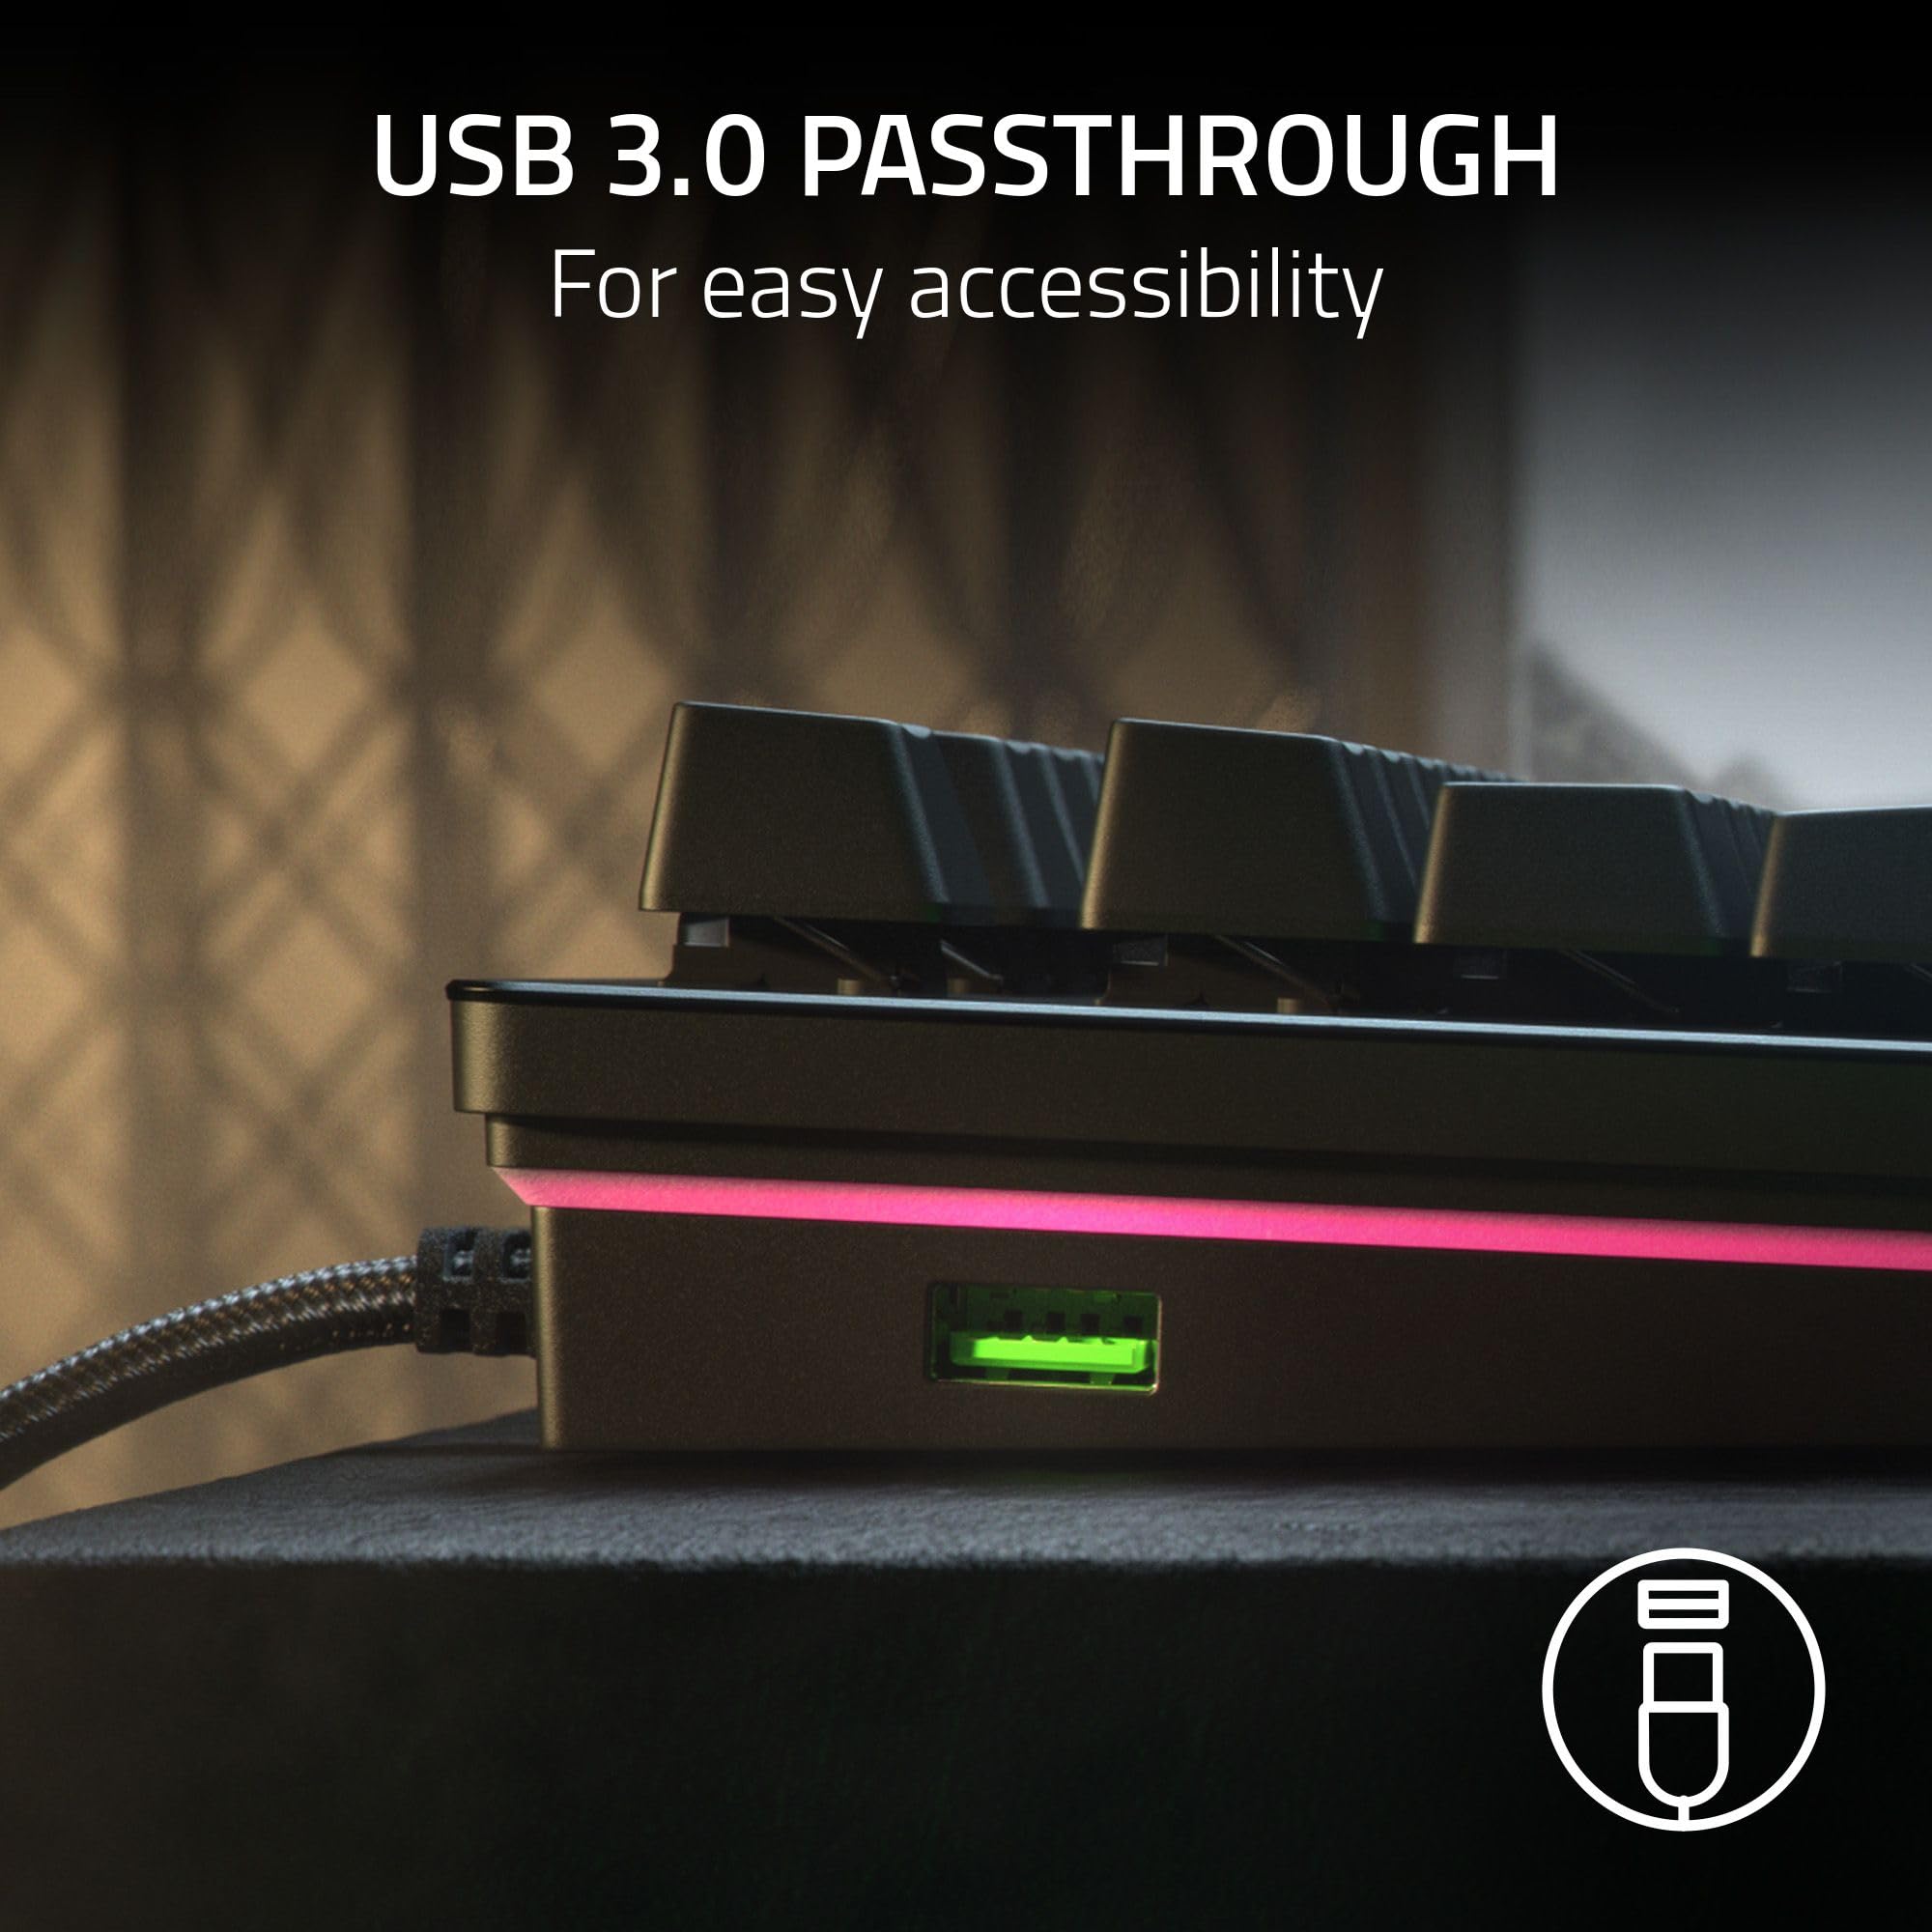 Razer Huntsman V2 (Analog Switch) - Optical Gaming Keyboard with Near-Zero Input Latency (Analog Optical-Mechanical Switches, Doubleshot PBT Keycaps, Detachable USB-C Cable) UK Layout | Black